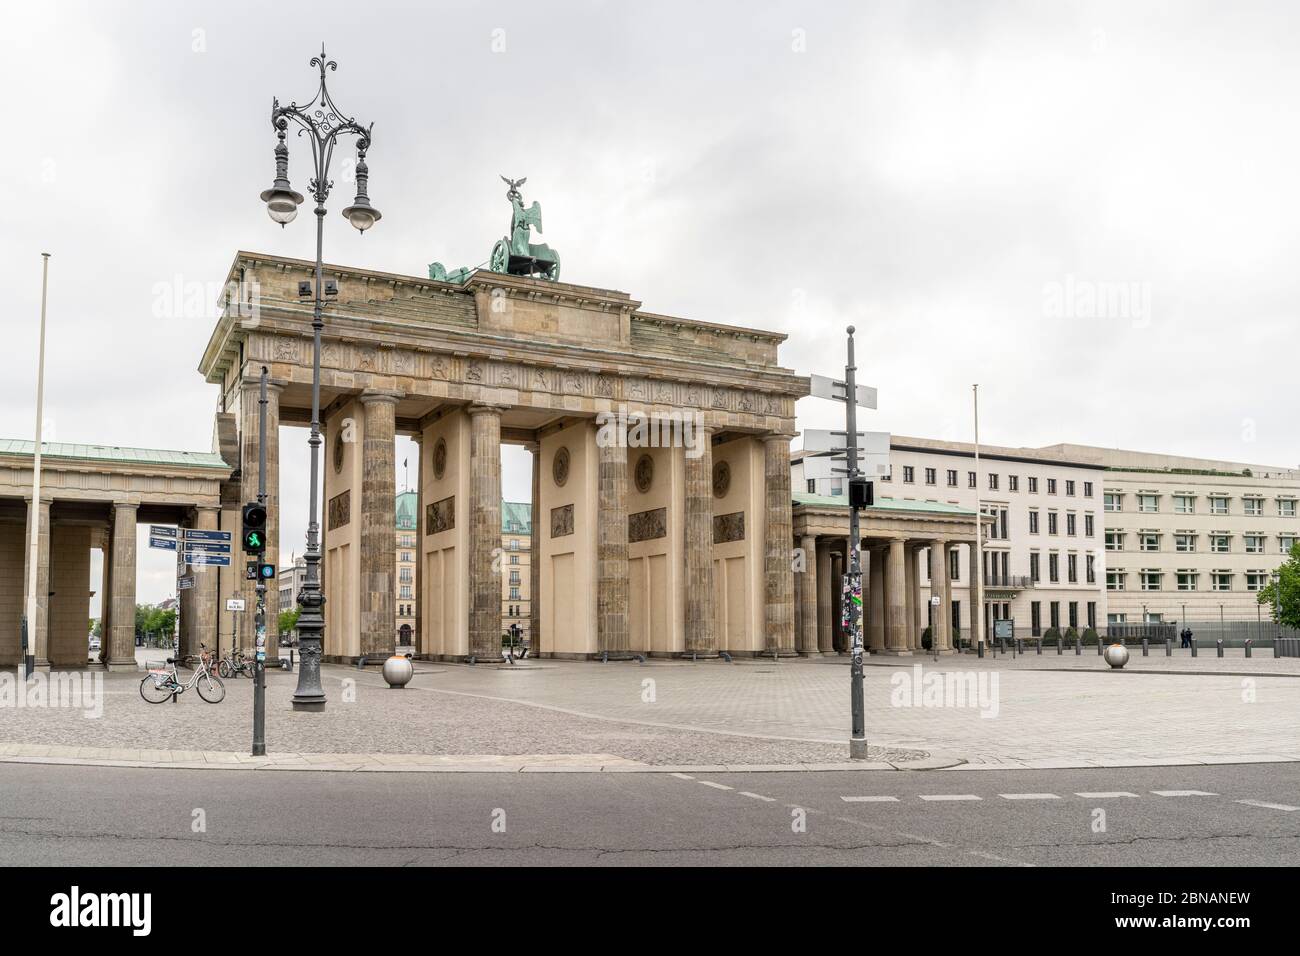 La storica porta di Brandeburgo è un punto di riferimento di Berlino, con lo spazio pubblico conosciuto come Platz des 18. März di fronte, a Berlino, Germania Foto Stock